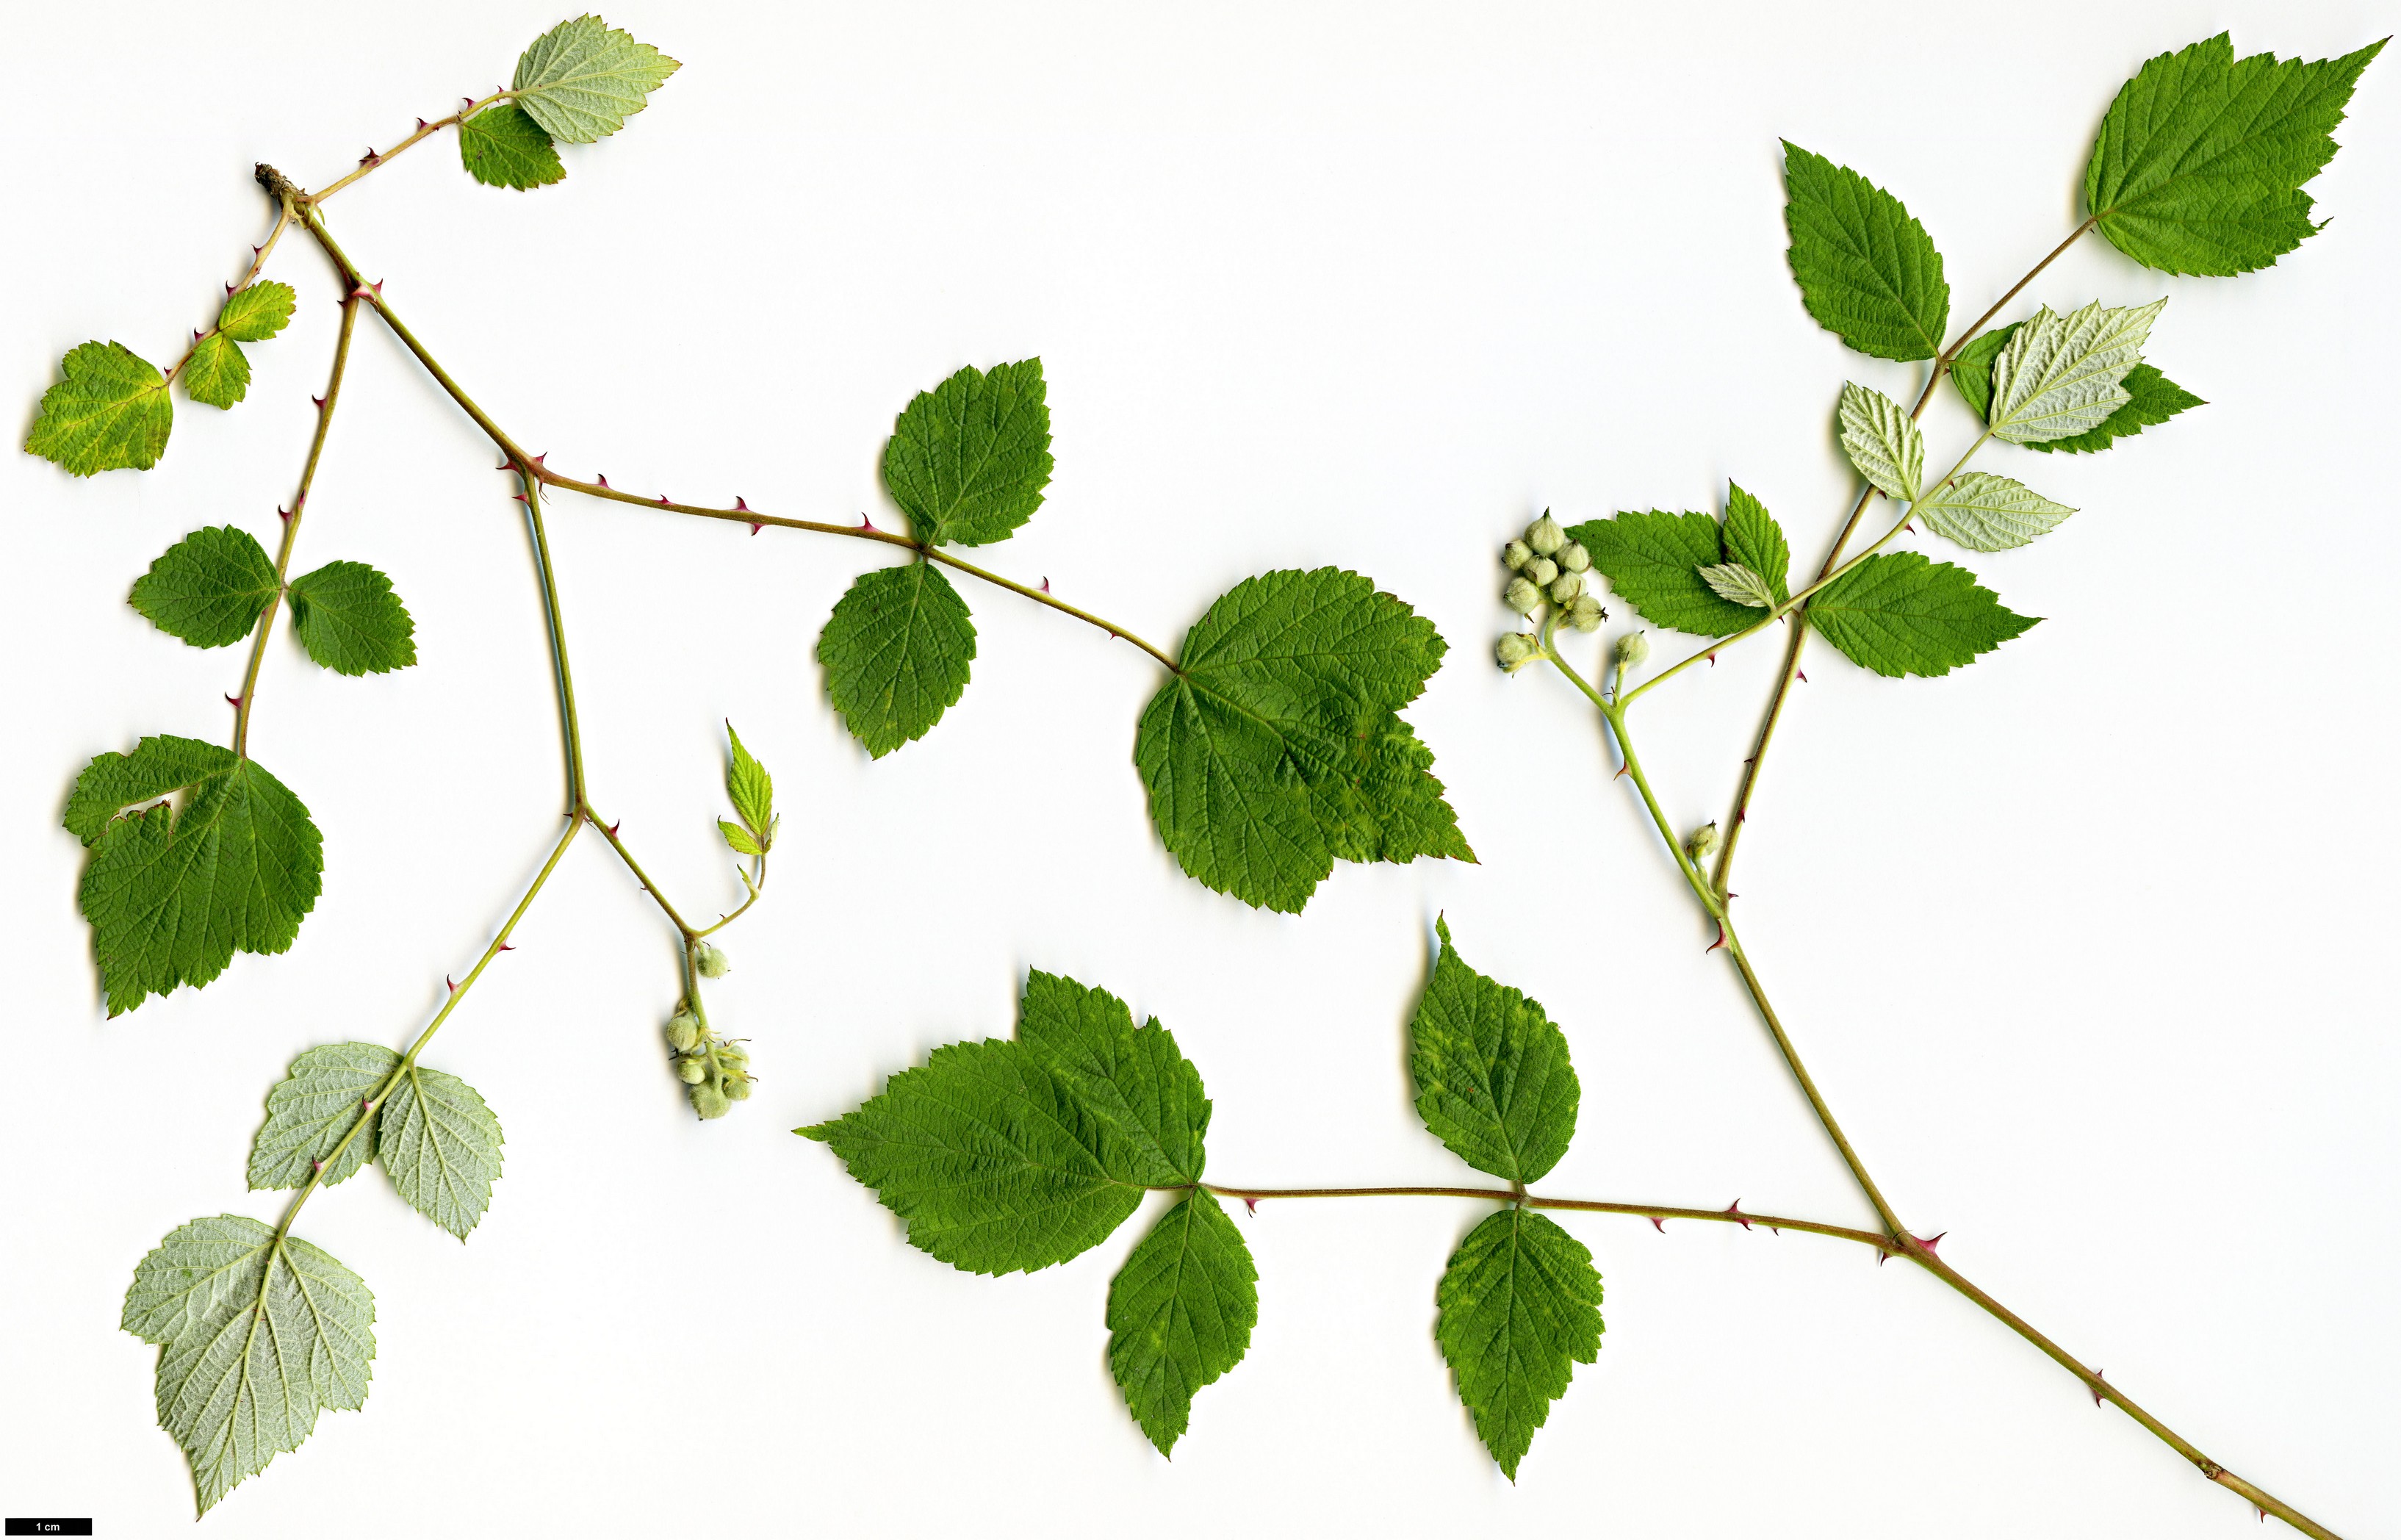 High resolution image: Family: Rosaceae - Genus: Rubus - Taxon: incanus